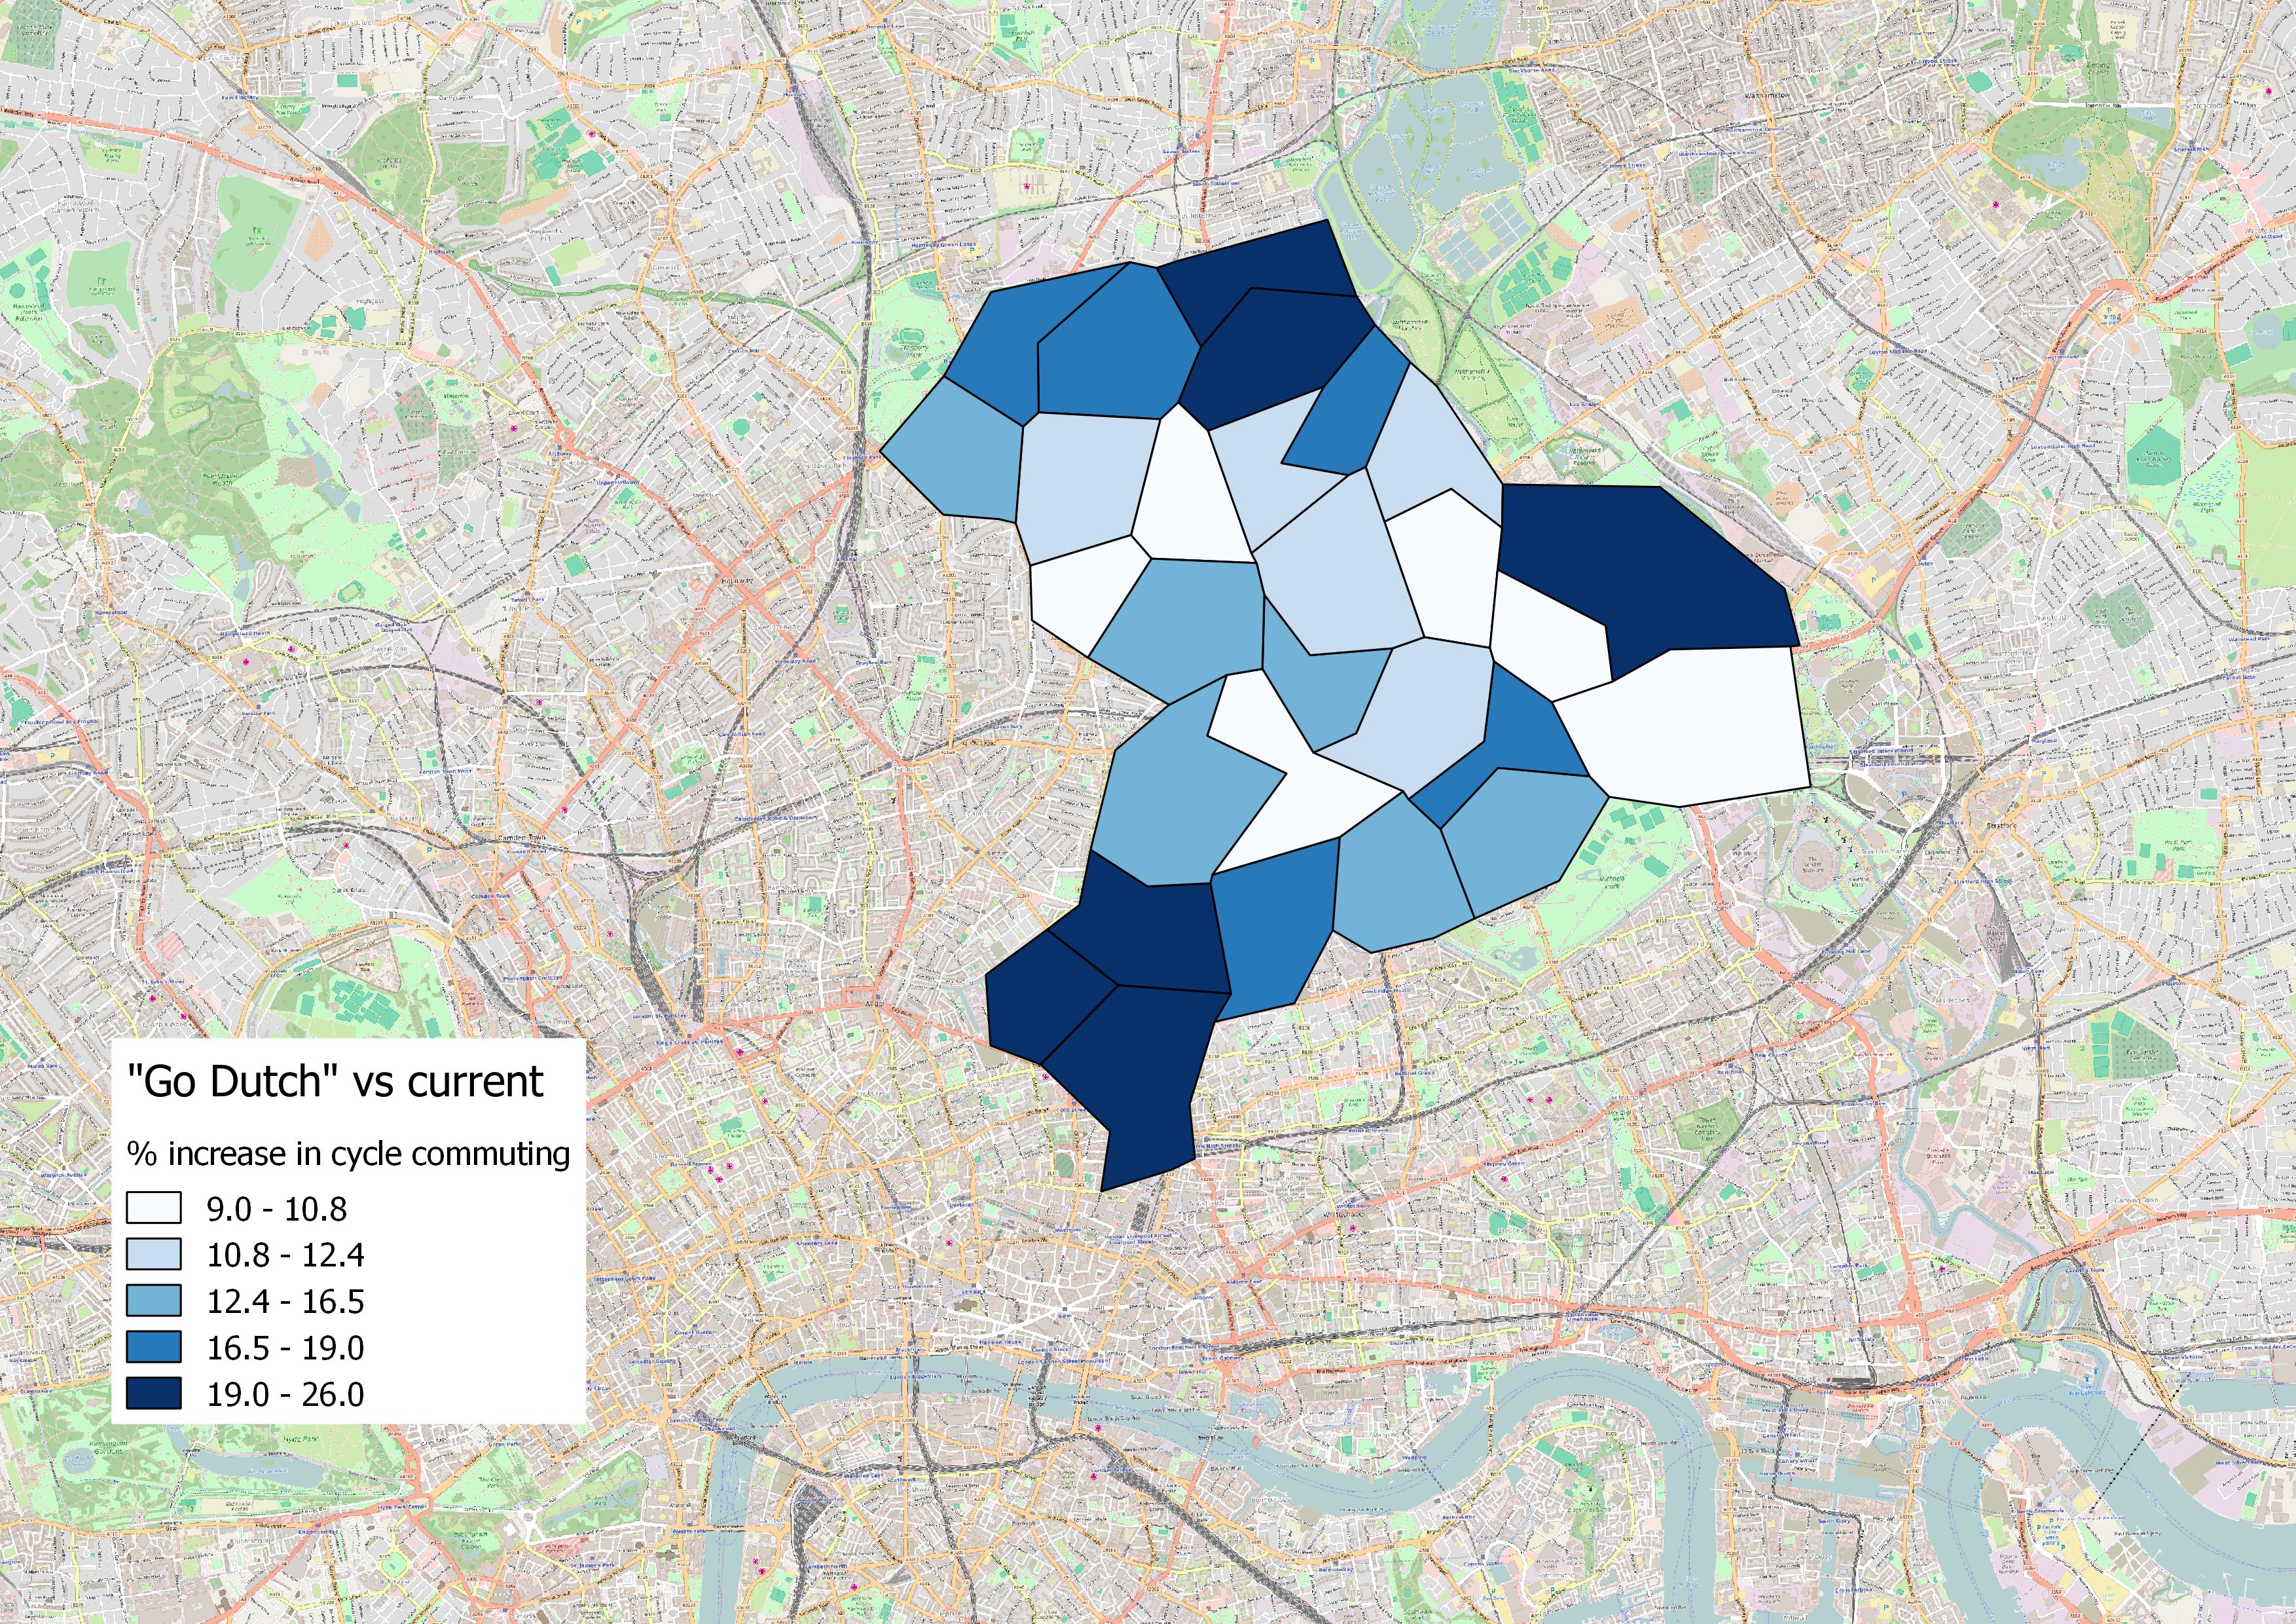 Hackney growth in cycle commuting, "Go Dutch" scenario